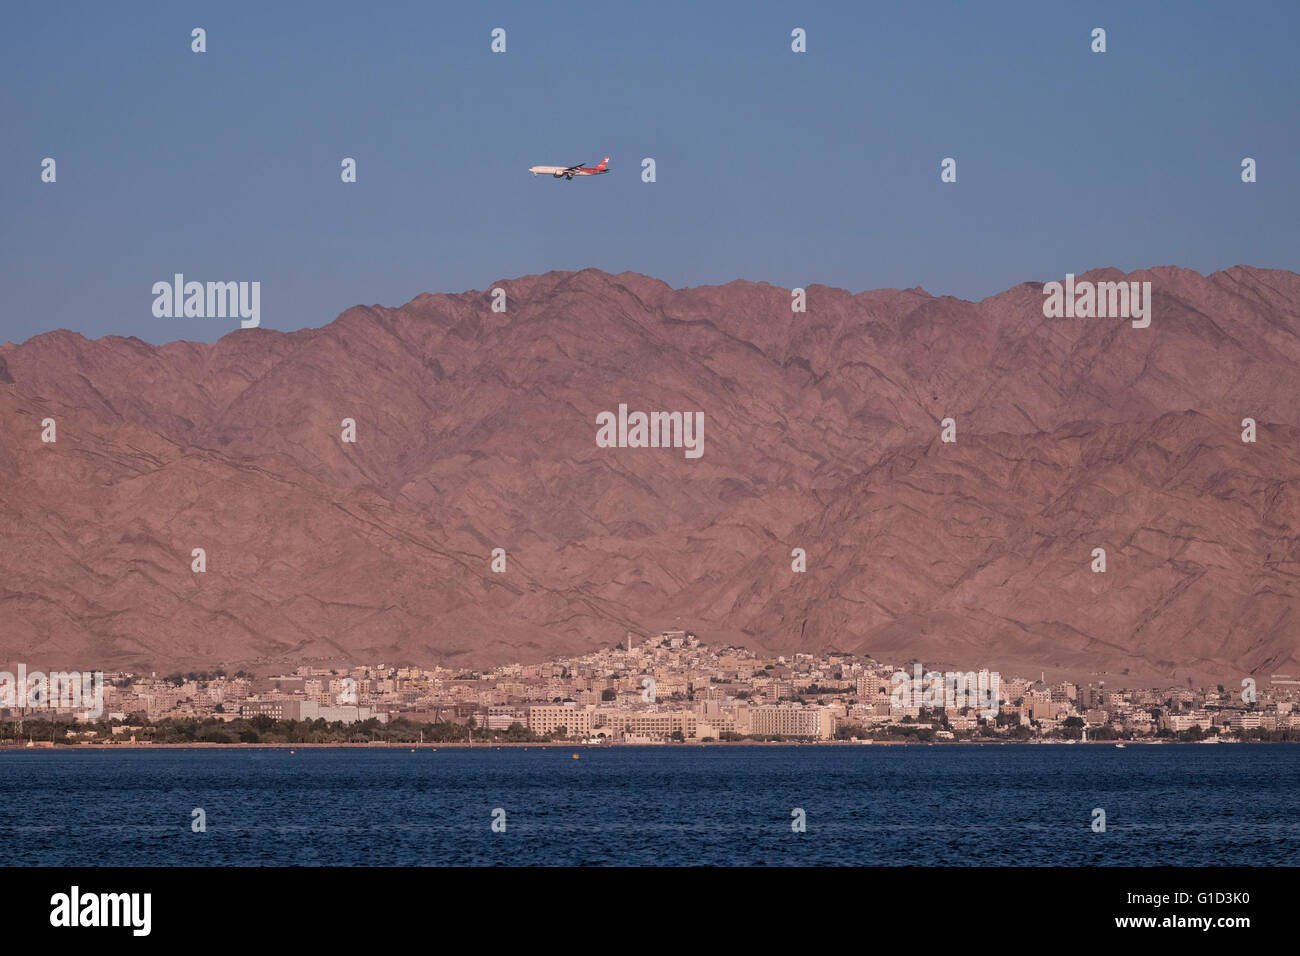 Ein Flugzeug der Nordwind Airlines eine russische Fluggesellschaft fliegt über die Stadt Aqaba die einzige Küstenstadt in Jordanien an der Nordspitze des Roten Meeres am Golf von Aqaba Stockfoto